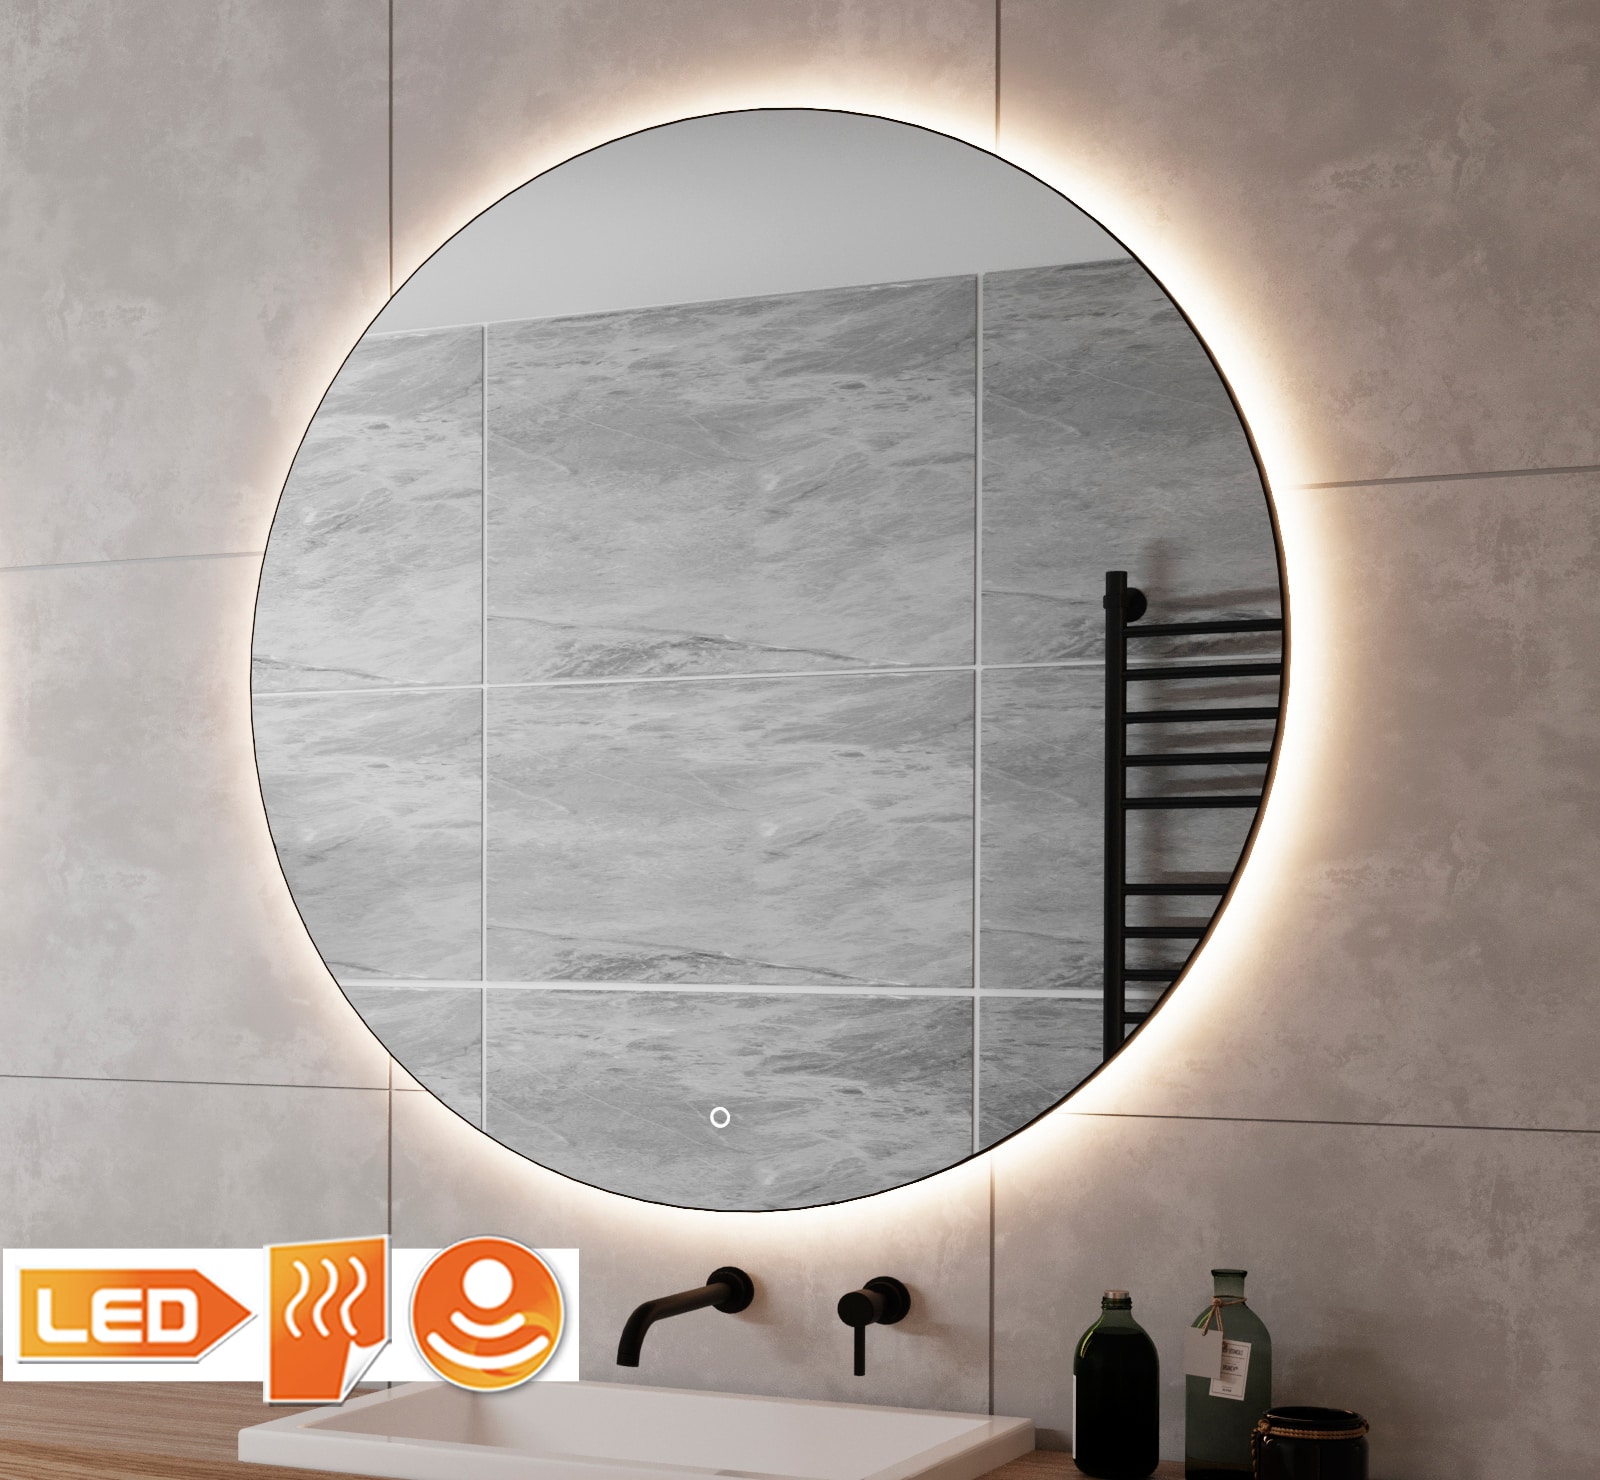 Ronde badkamerspiegel met indirecte verlichting, verwarming, touch sensor, dimfunctie mat frame 100x100 cm - Designspiegels